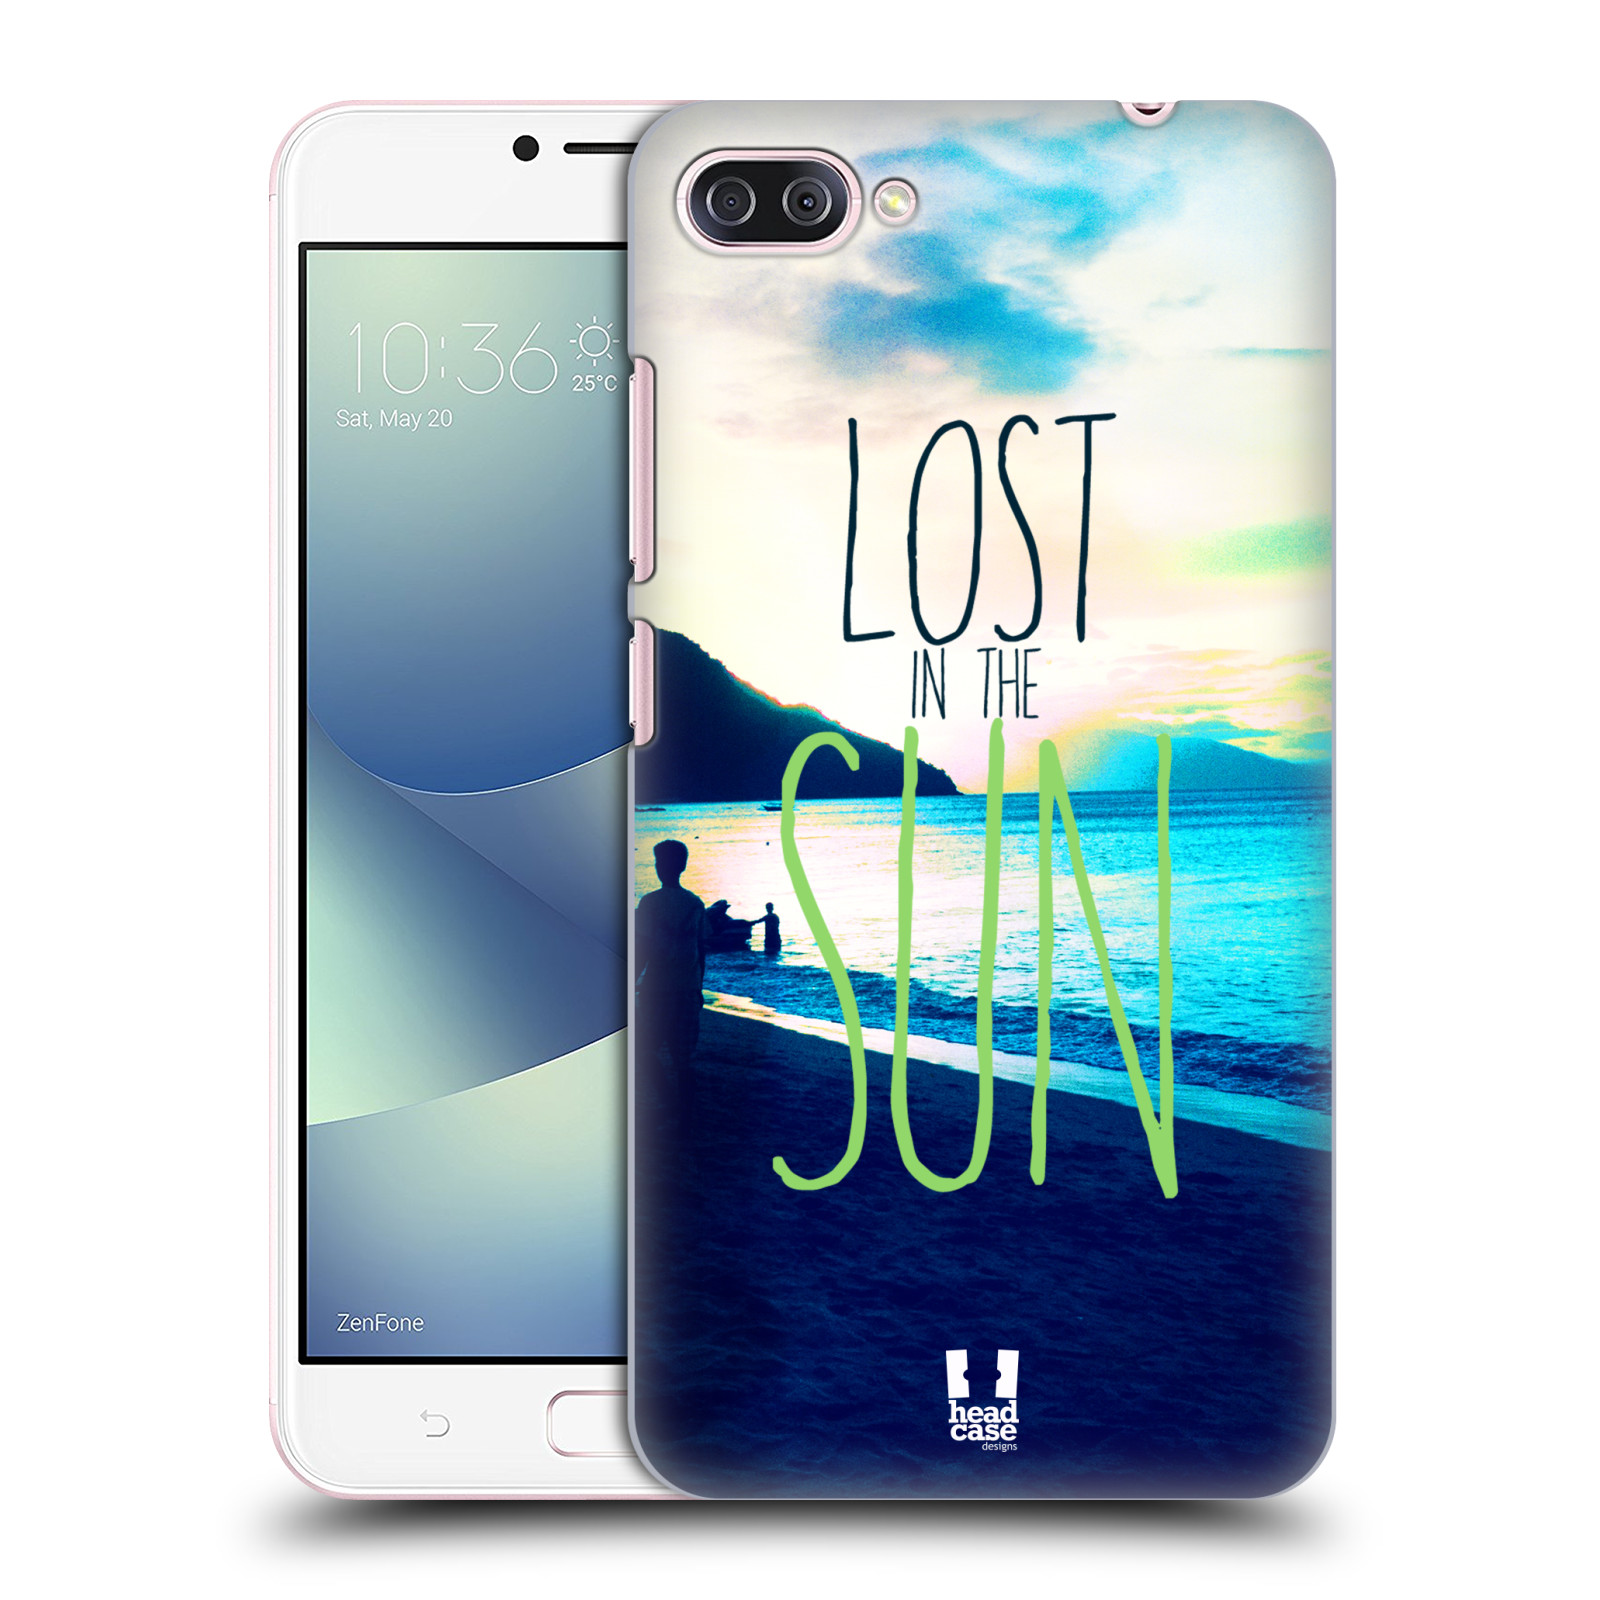 HEAD CASE plastový obal na mobil Asus Zenfone 4 MAX ZC554KL vzor Pozitivní vlny MODRÁ, moře, slunce a pláž LOST IN THE SUN